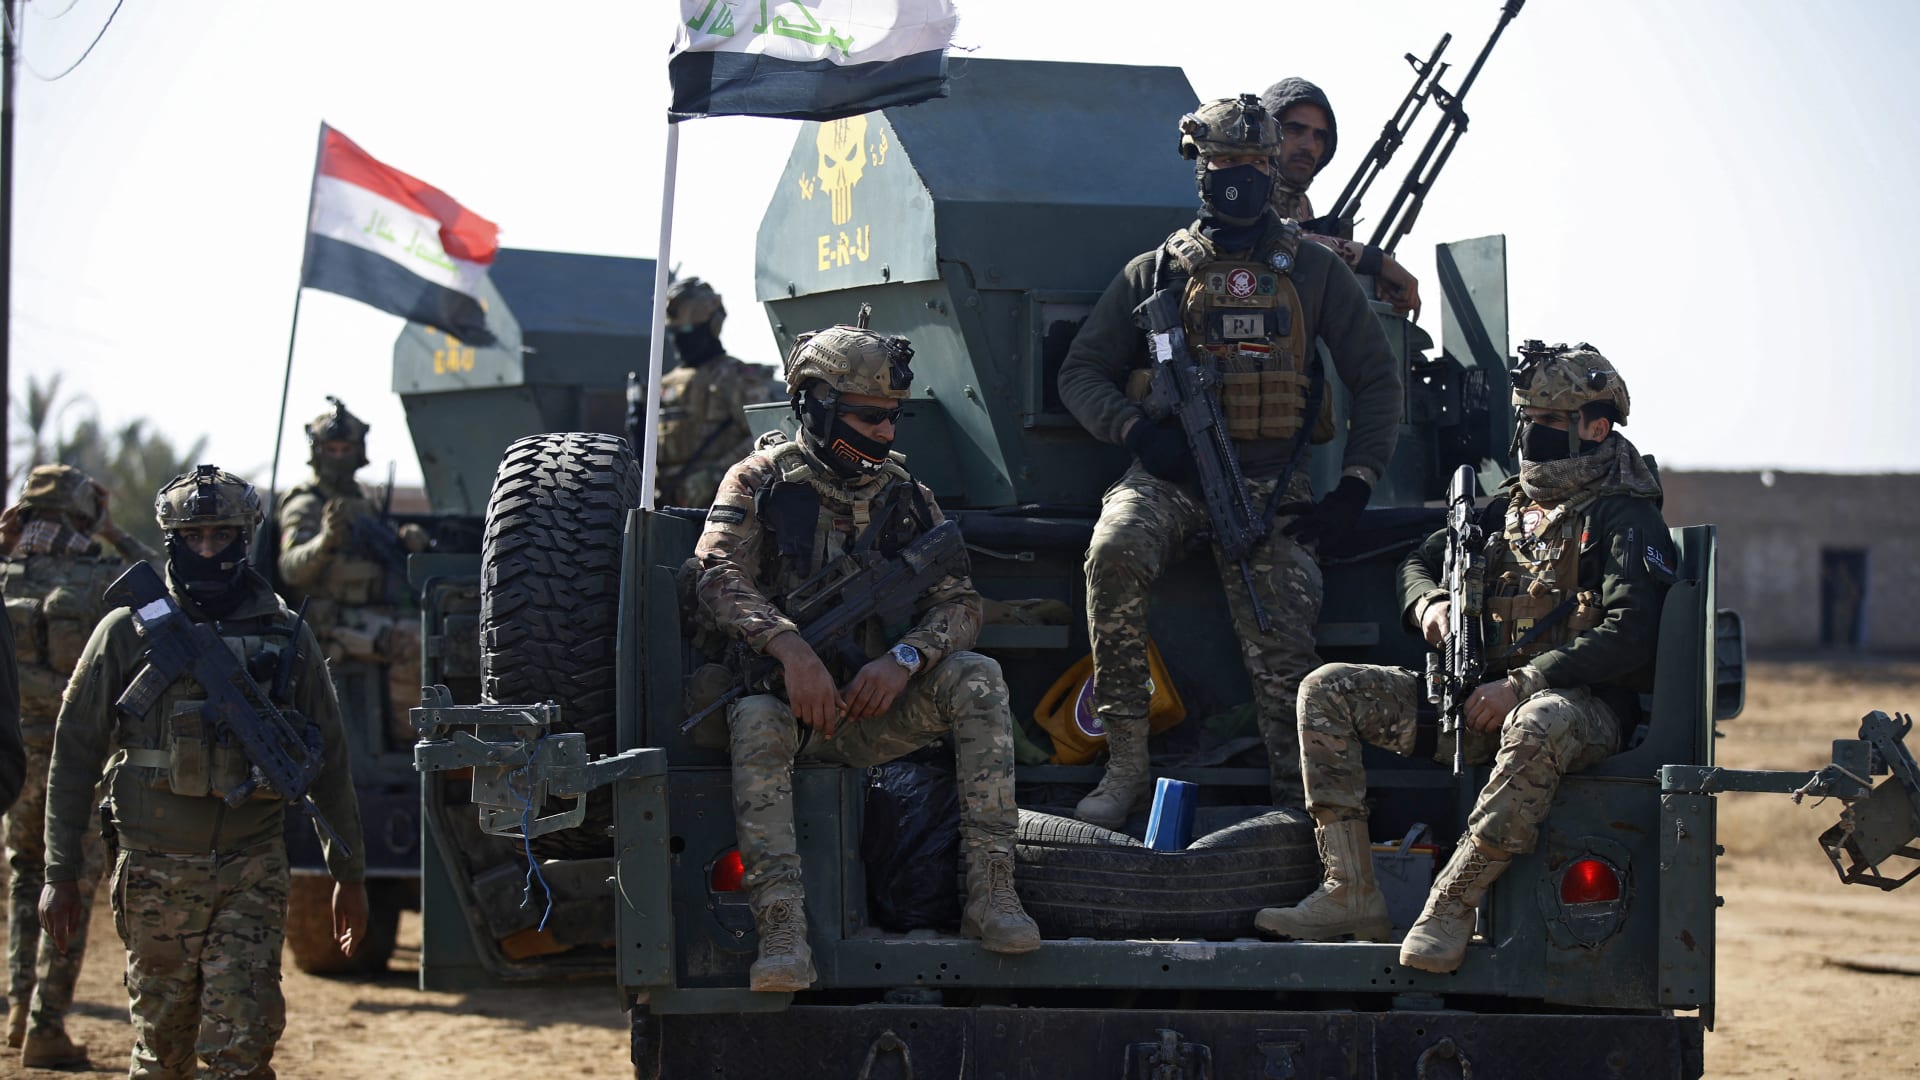  العراق يعلن شن عملية "سيوف الحق" ضد فلول "داعش" في 3 محافظات بعد هجوم دموي